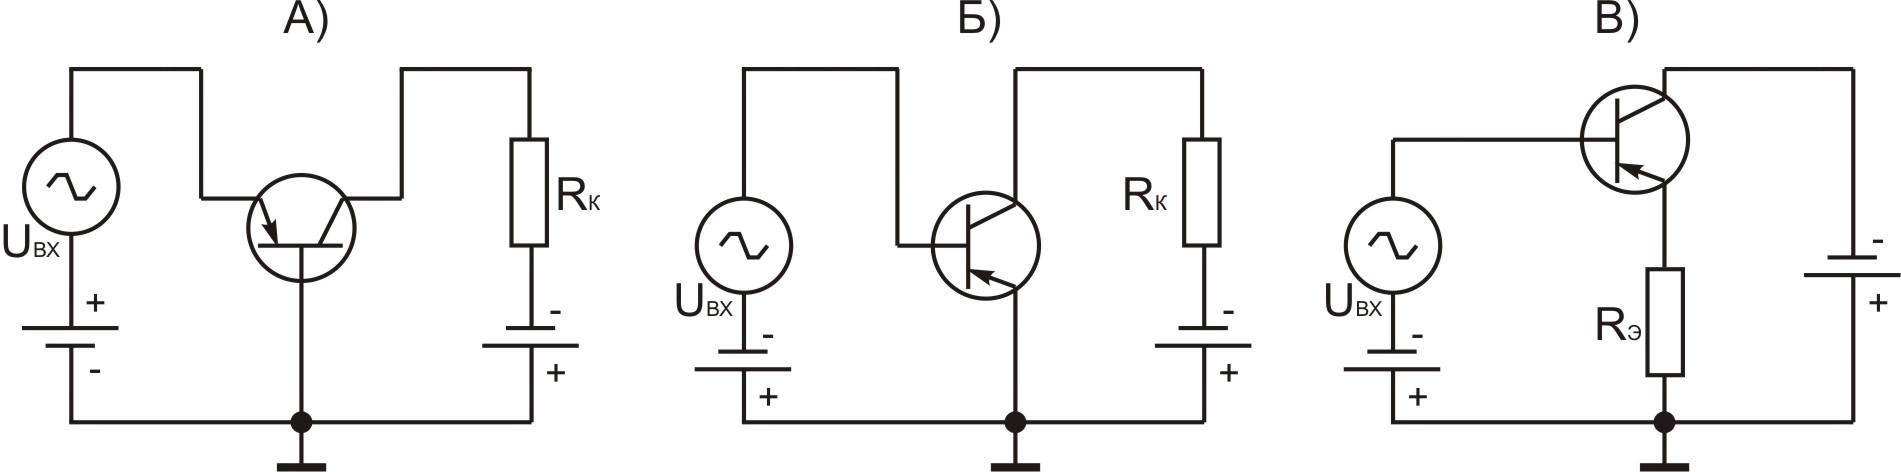 Контрольная работа: Исследование биполярного транзистора МП-40А